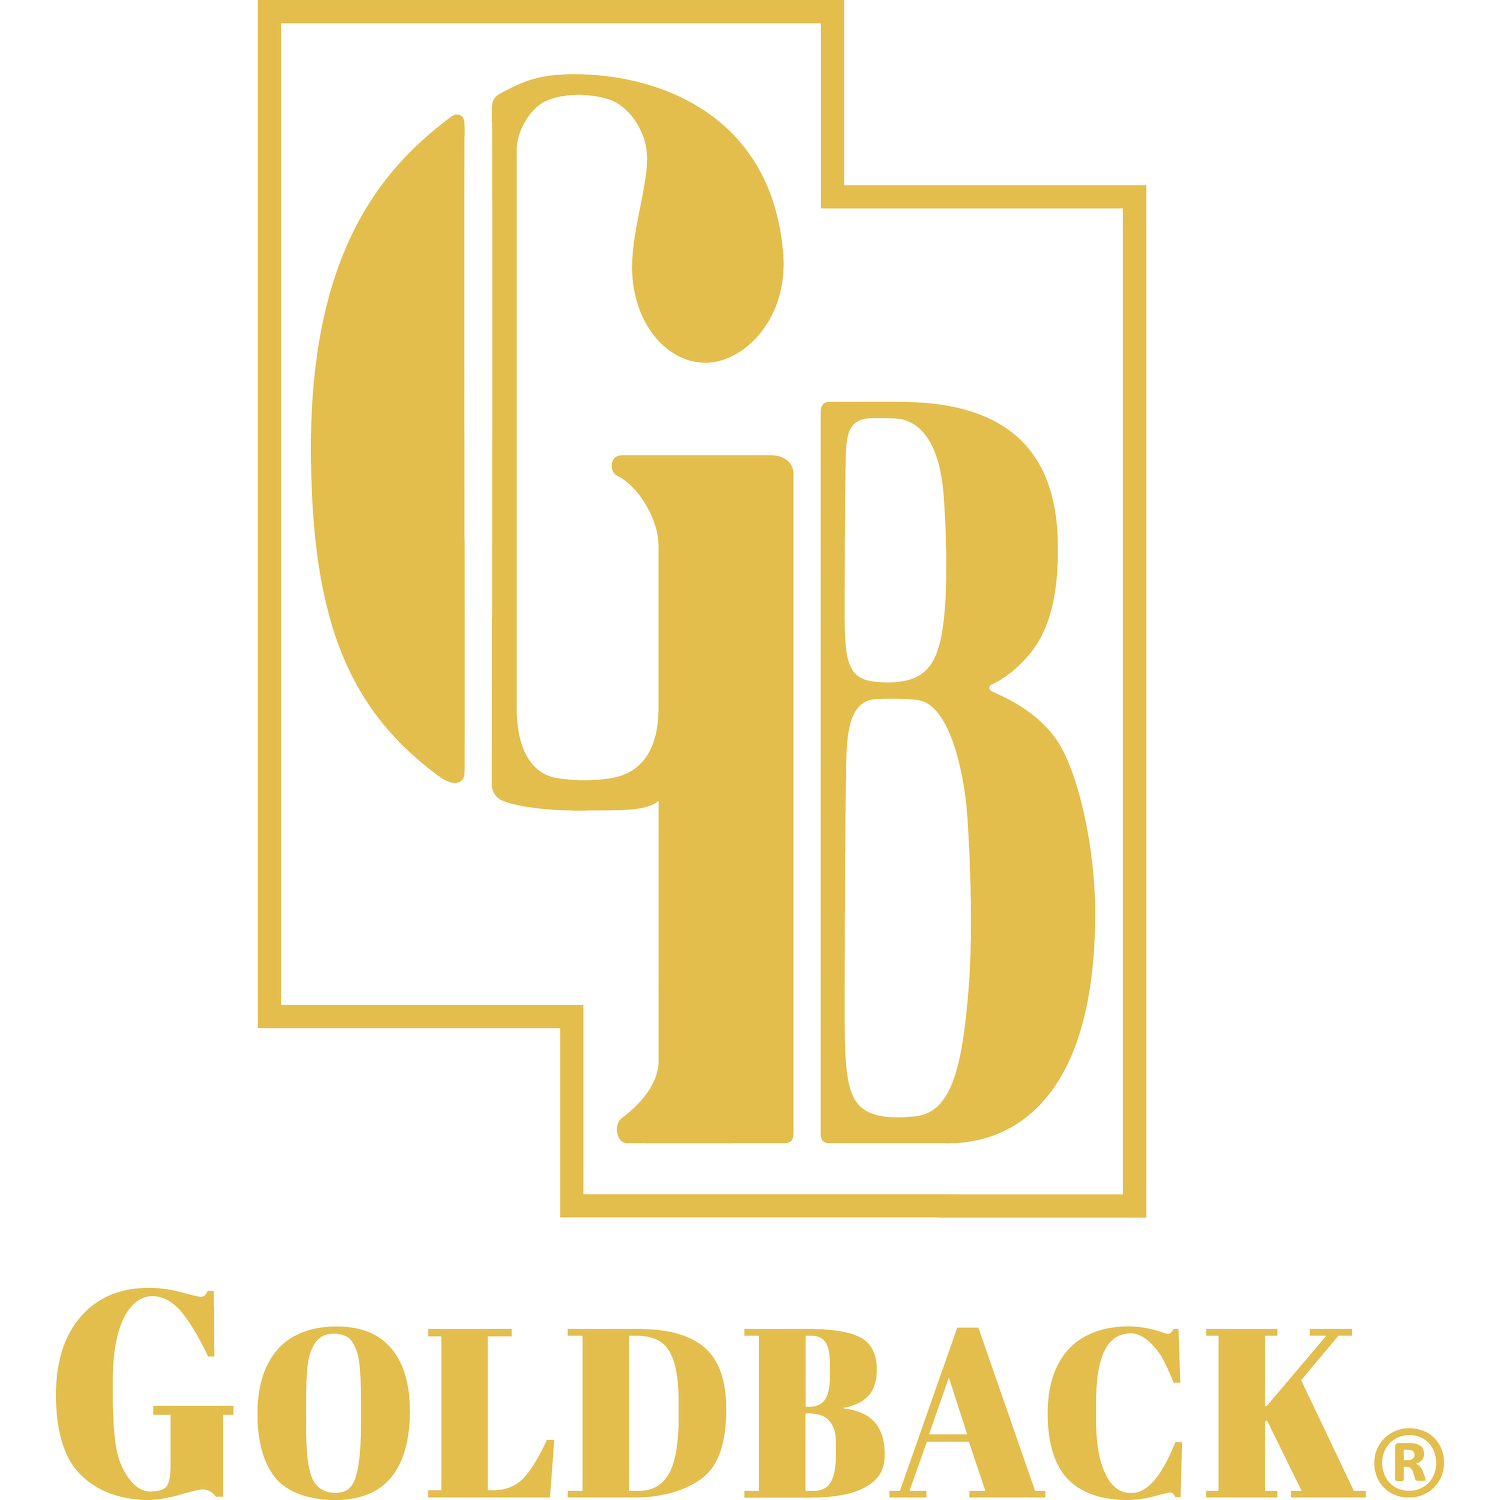 goldback.com